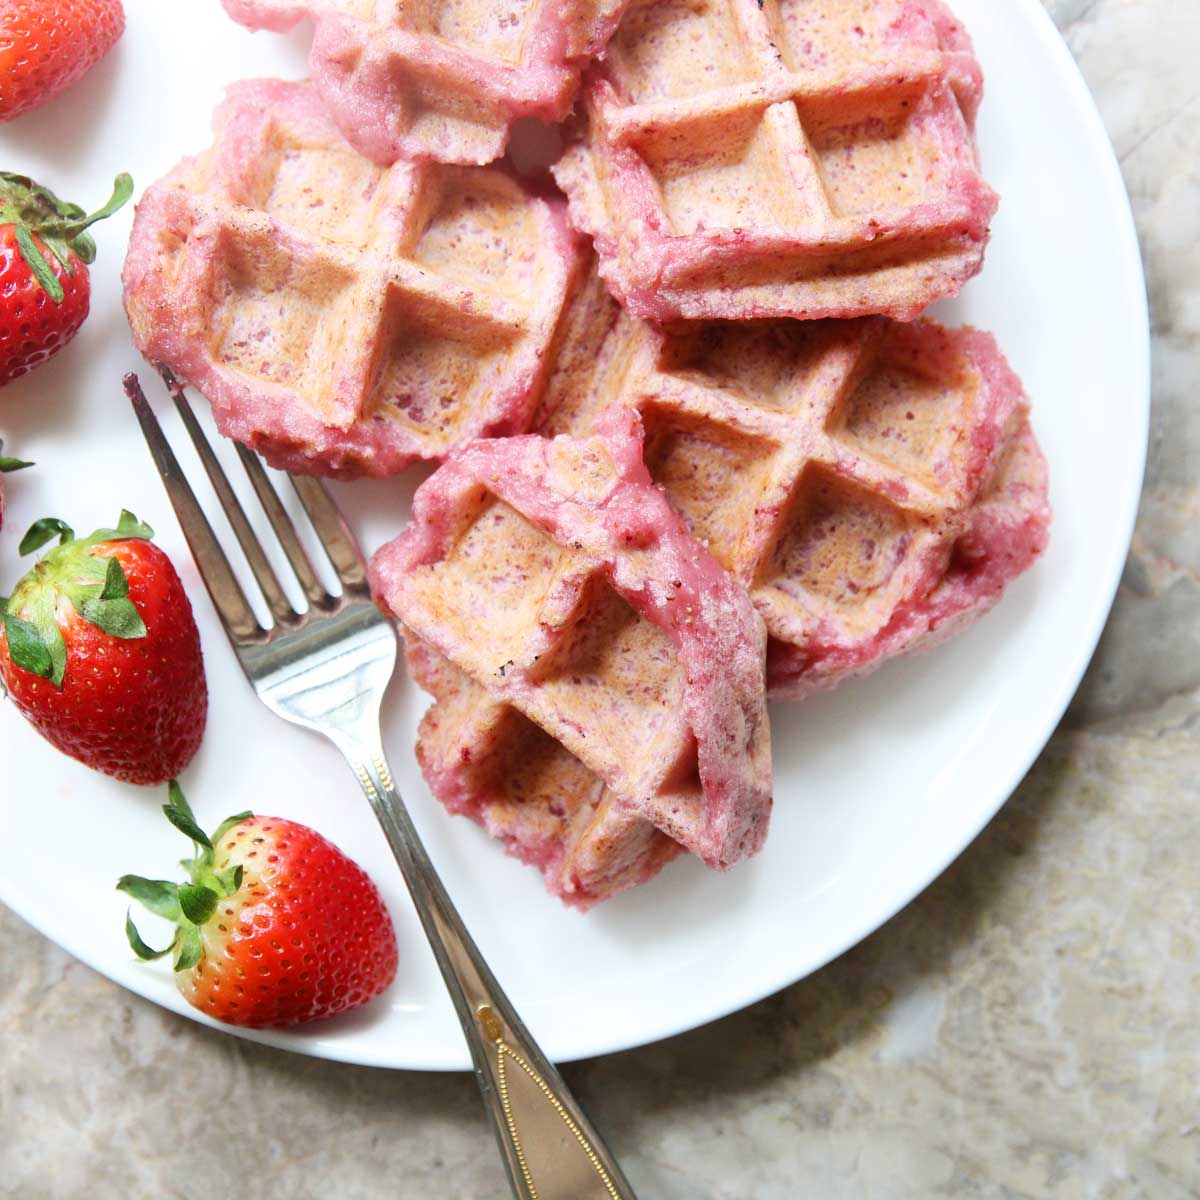 Healthy Greek Yogurt Strawberry Santas (10 Minutes, 3 Ingredients) - strawberry santas